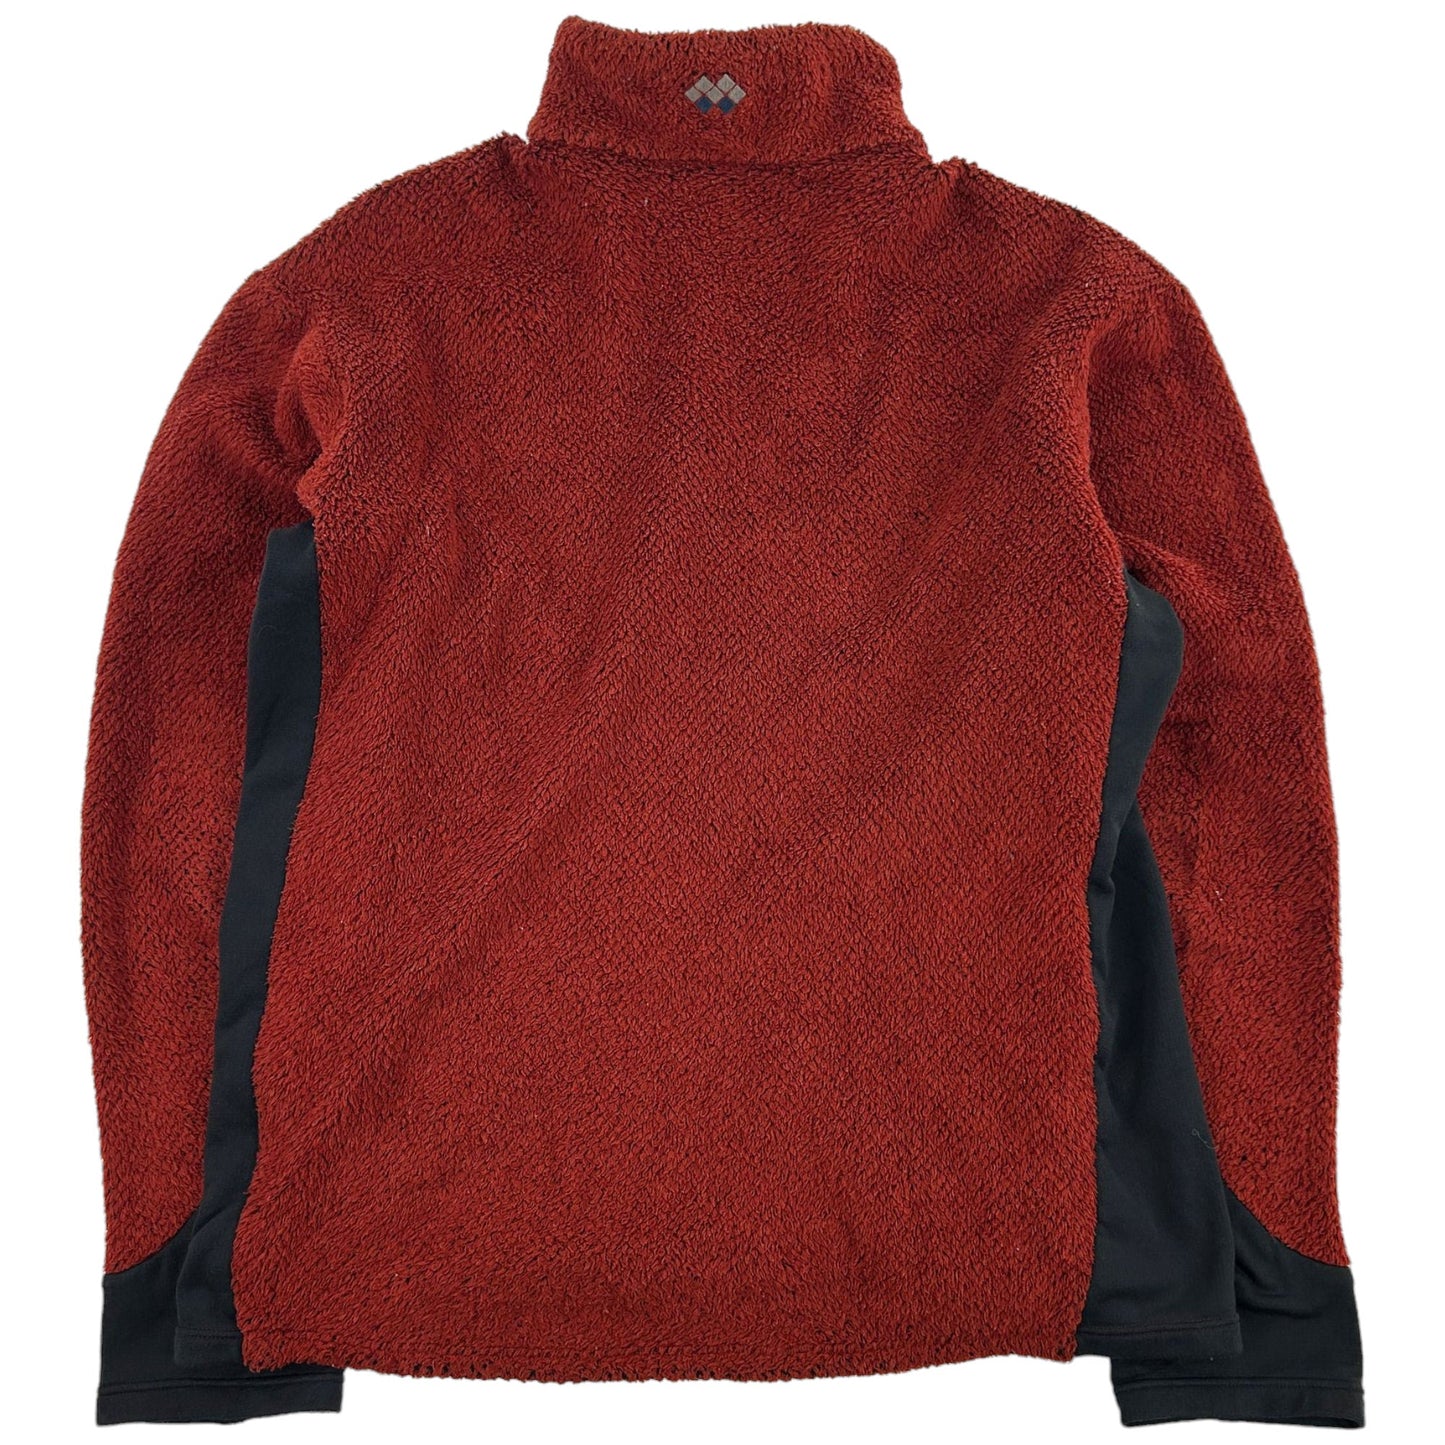 Vintage Montbell Fleece Jacket Size M